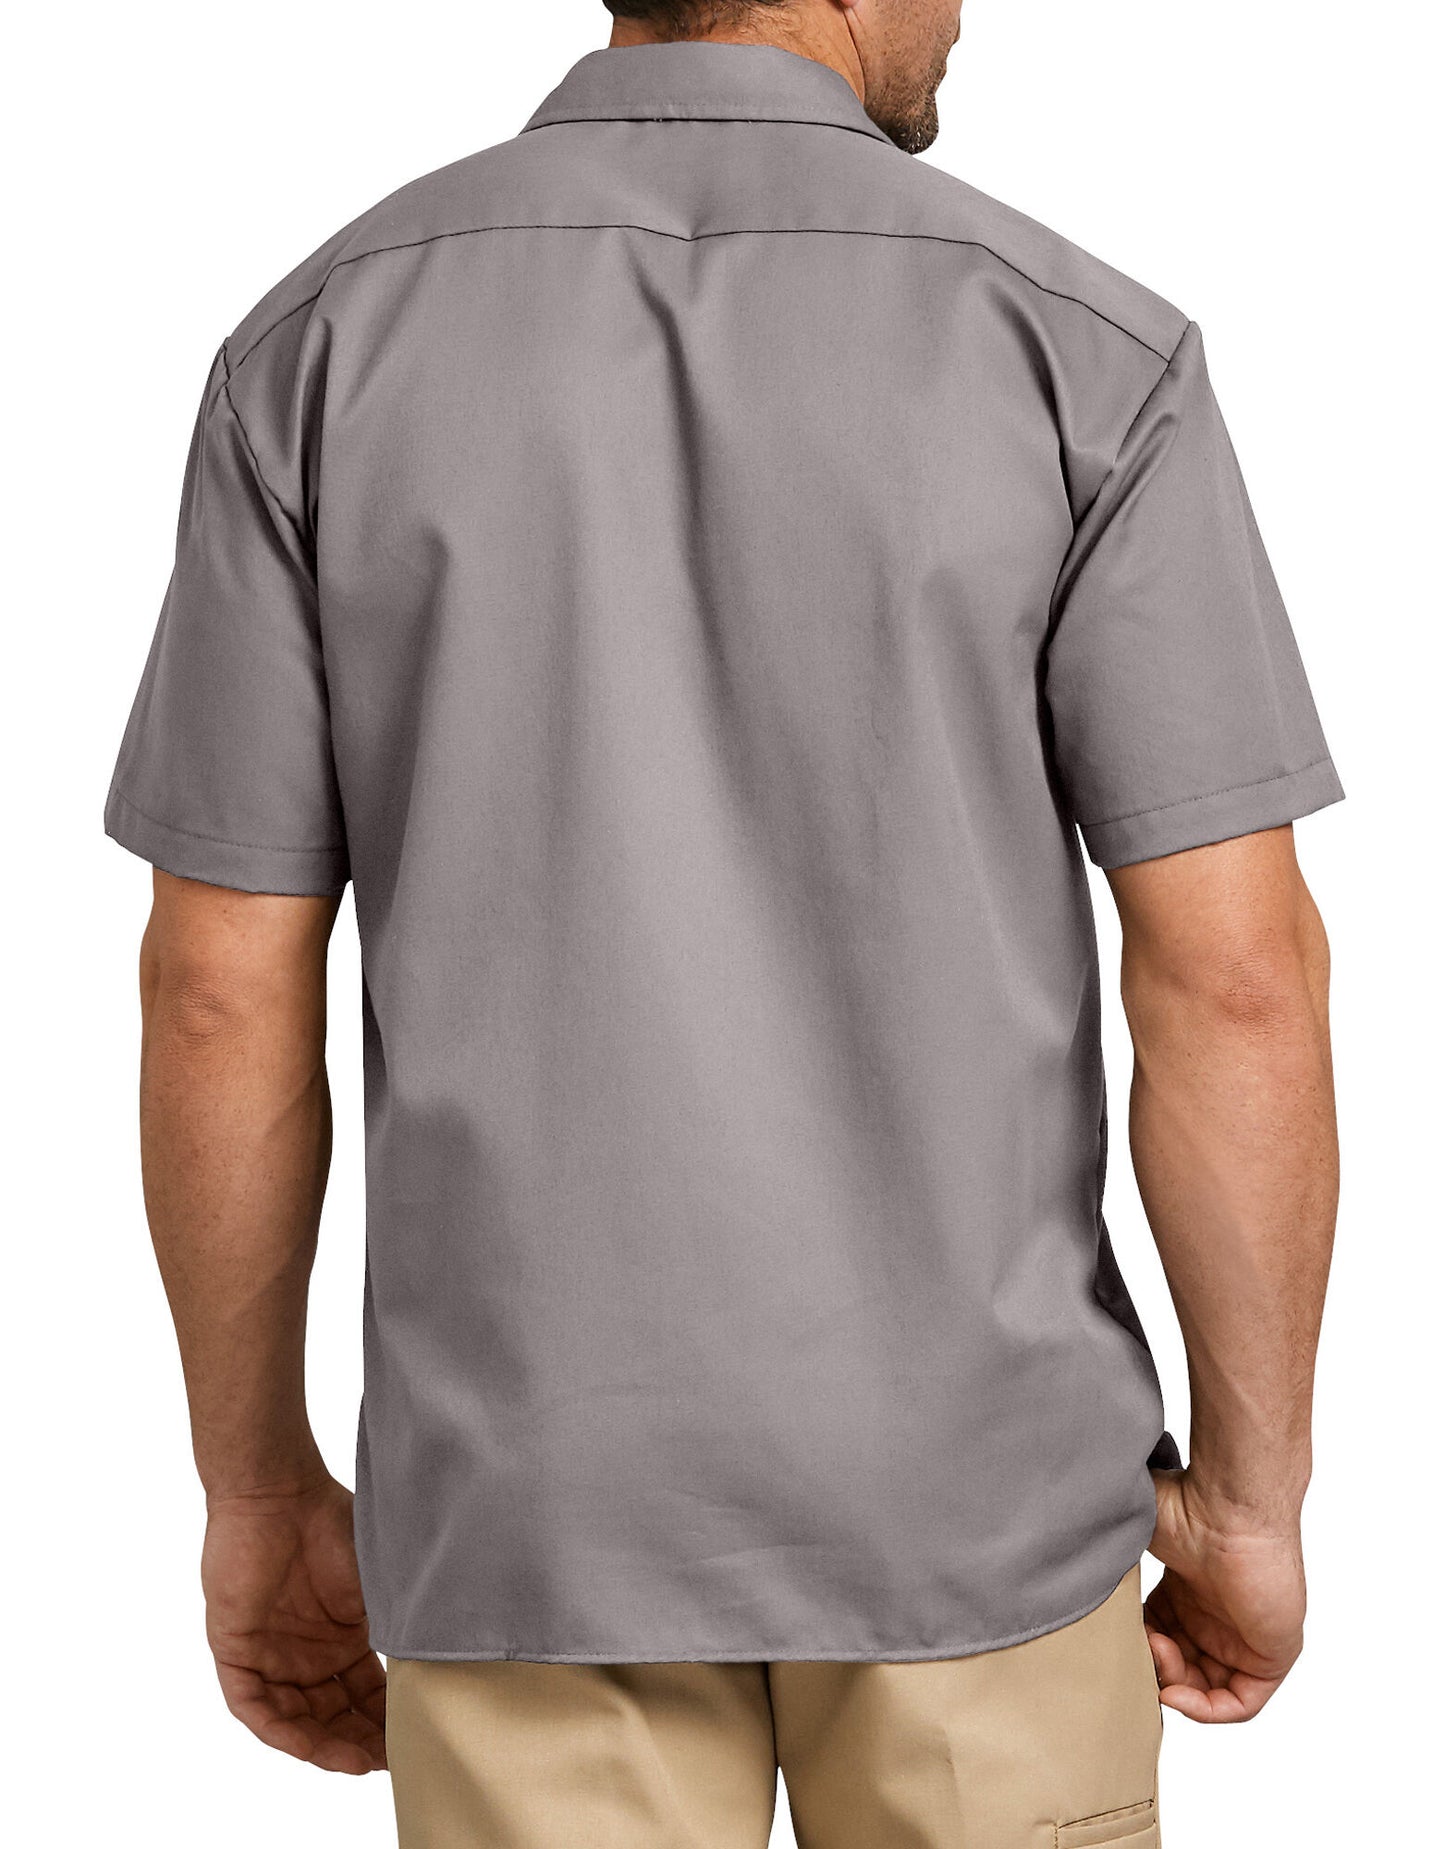 Short Sleeve Work Shirt